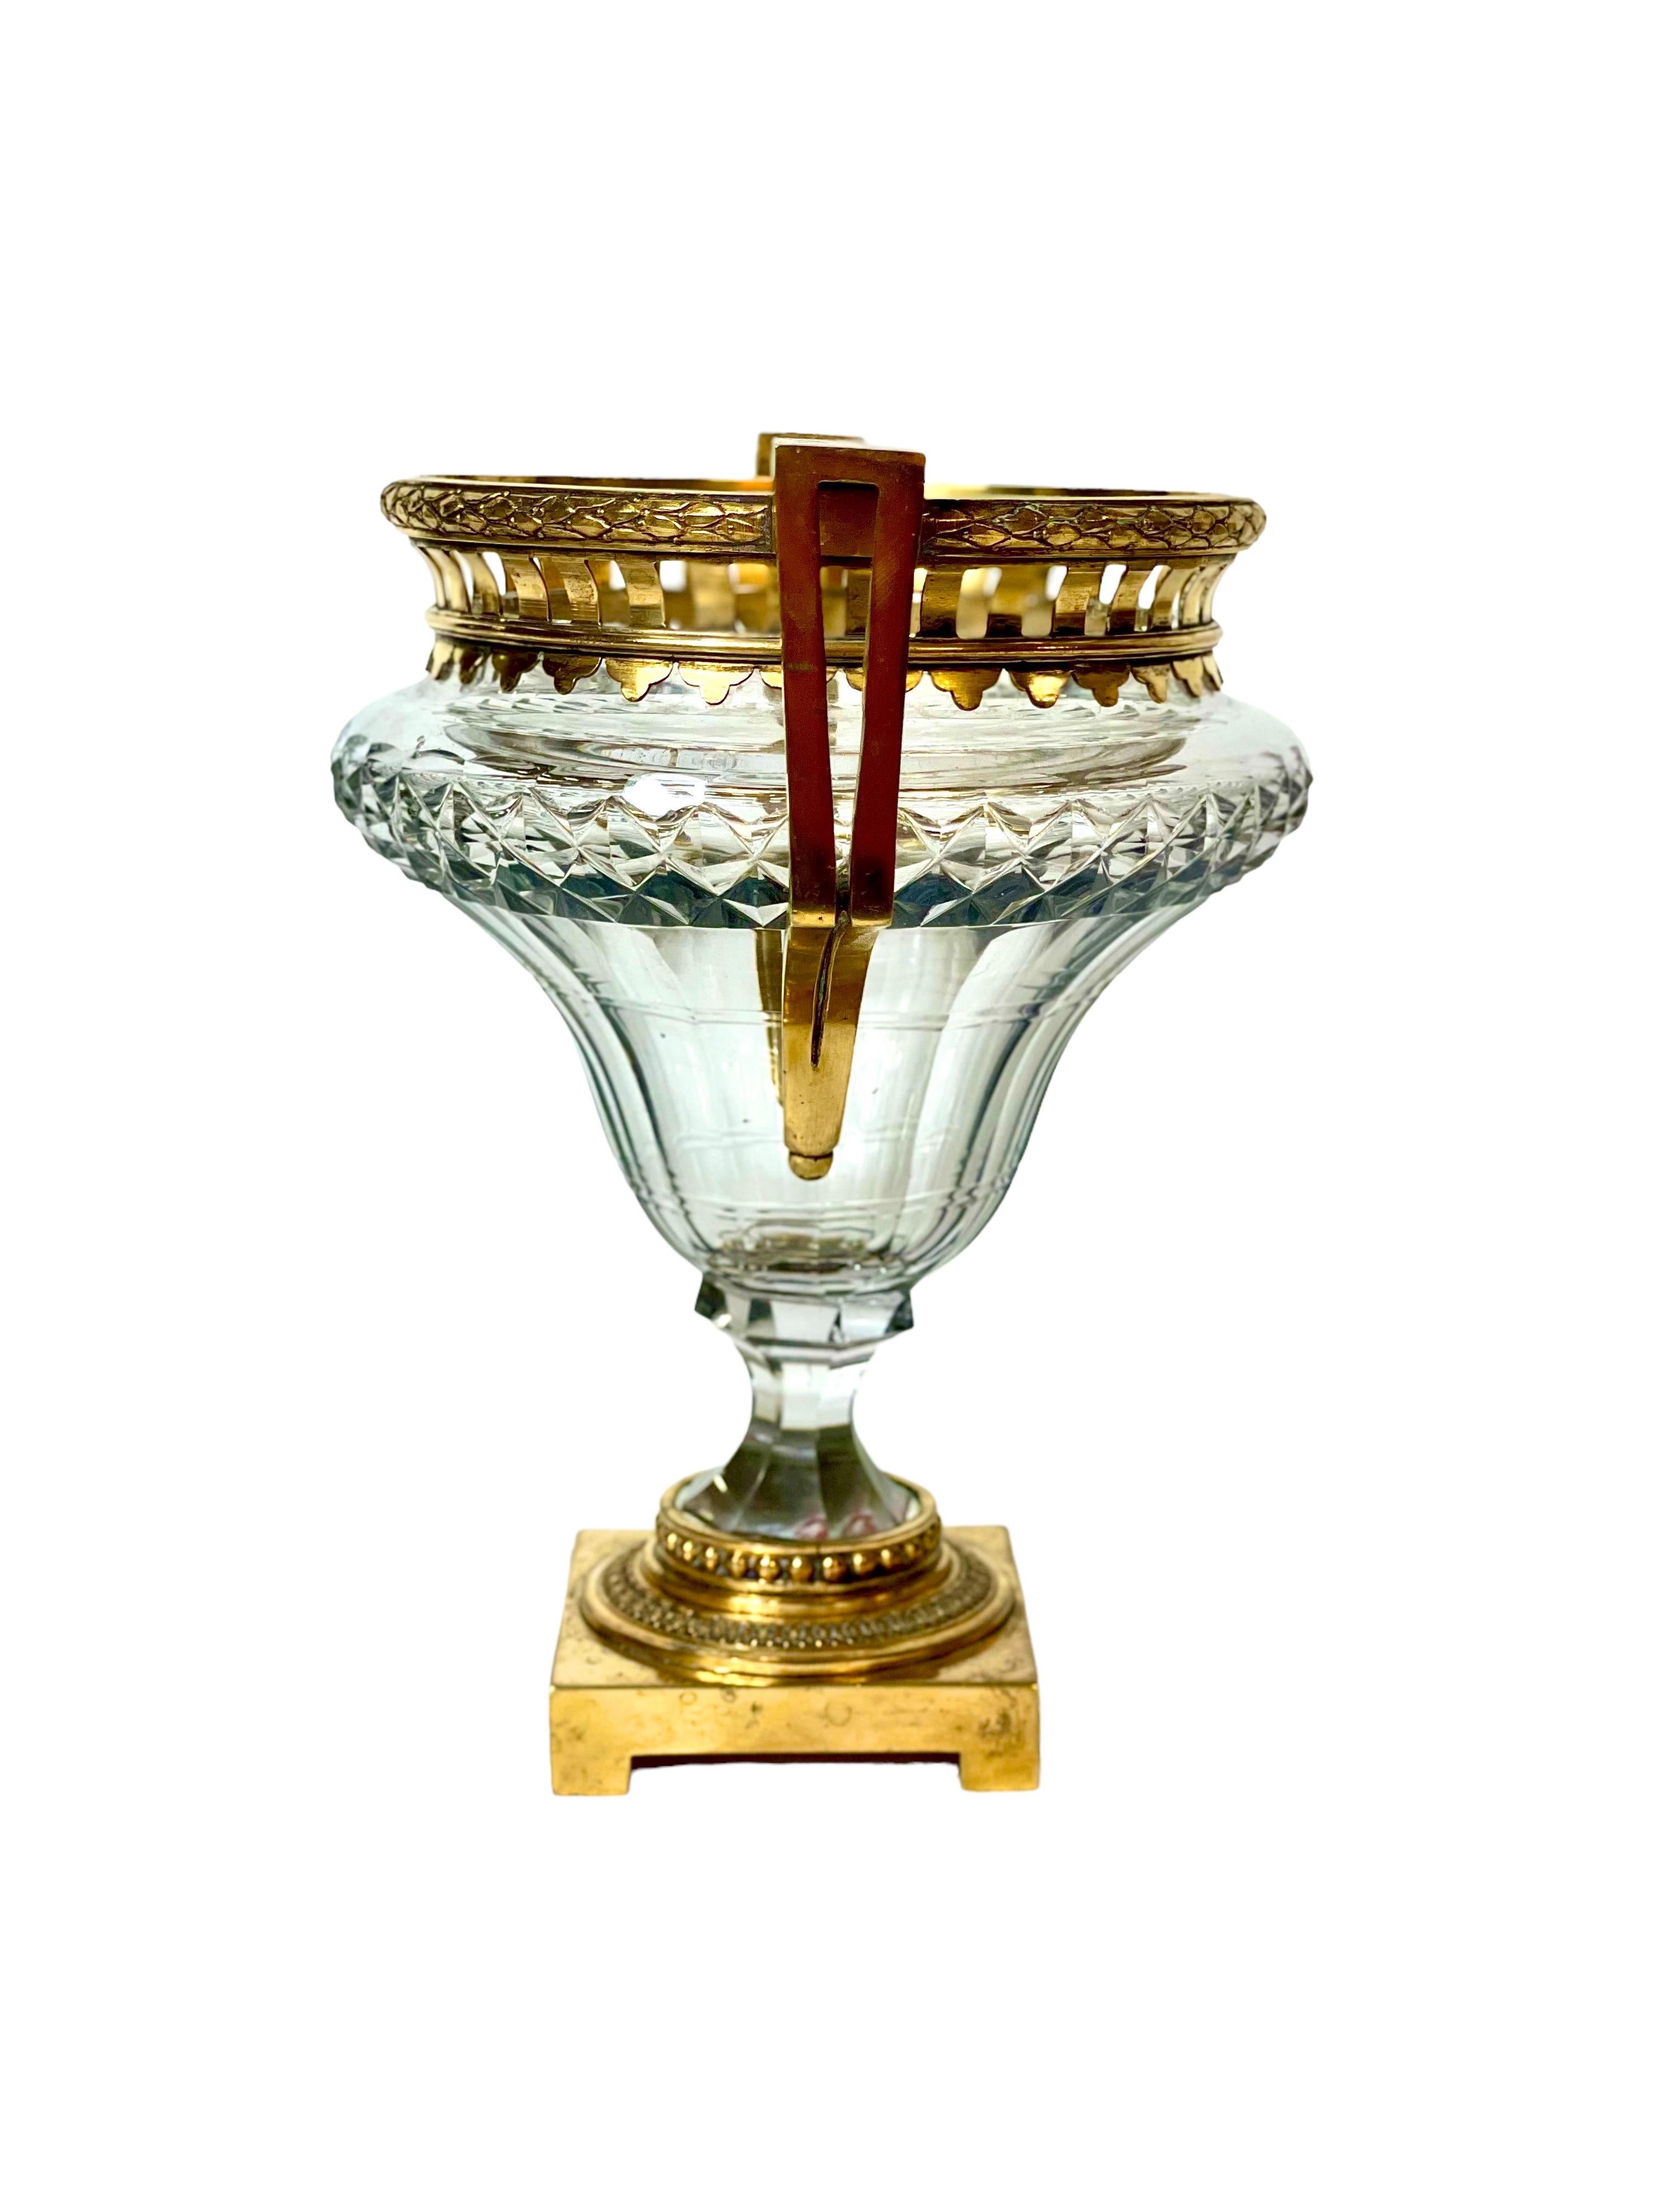 Vase classique et opulent en cristal et bronze doré de style Louis XVI, dont la coupe en cristal lourd en forme de gobelet est taillée en diamant et cannelée pour réfracter la lumière. Luxueusement orné d'une monture en laiton et de remarquables